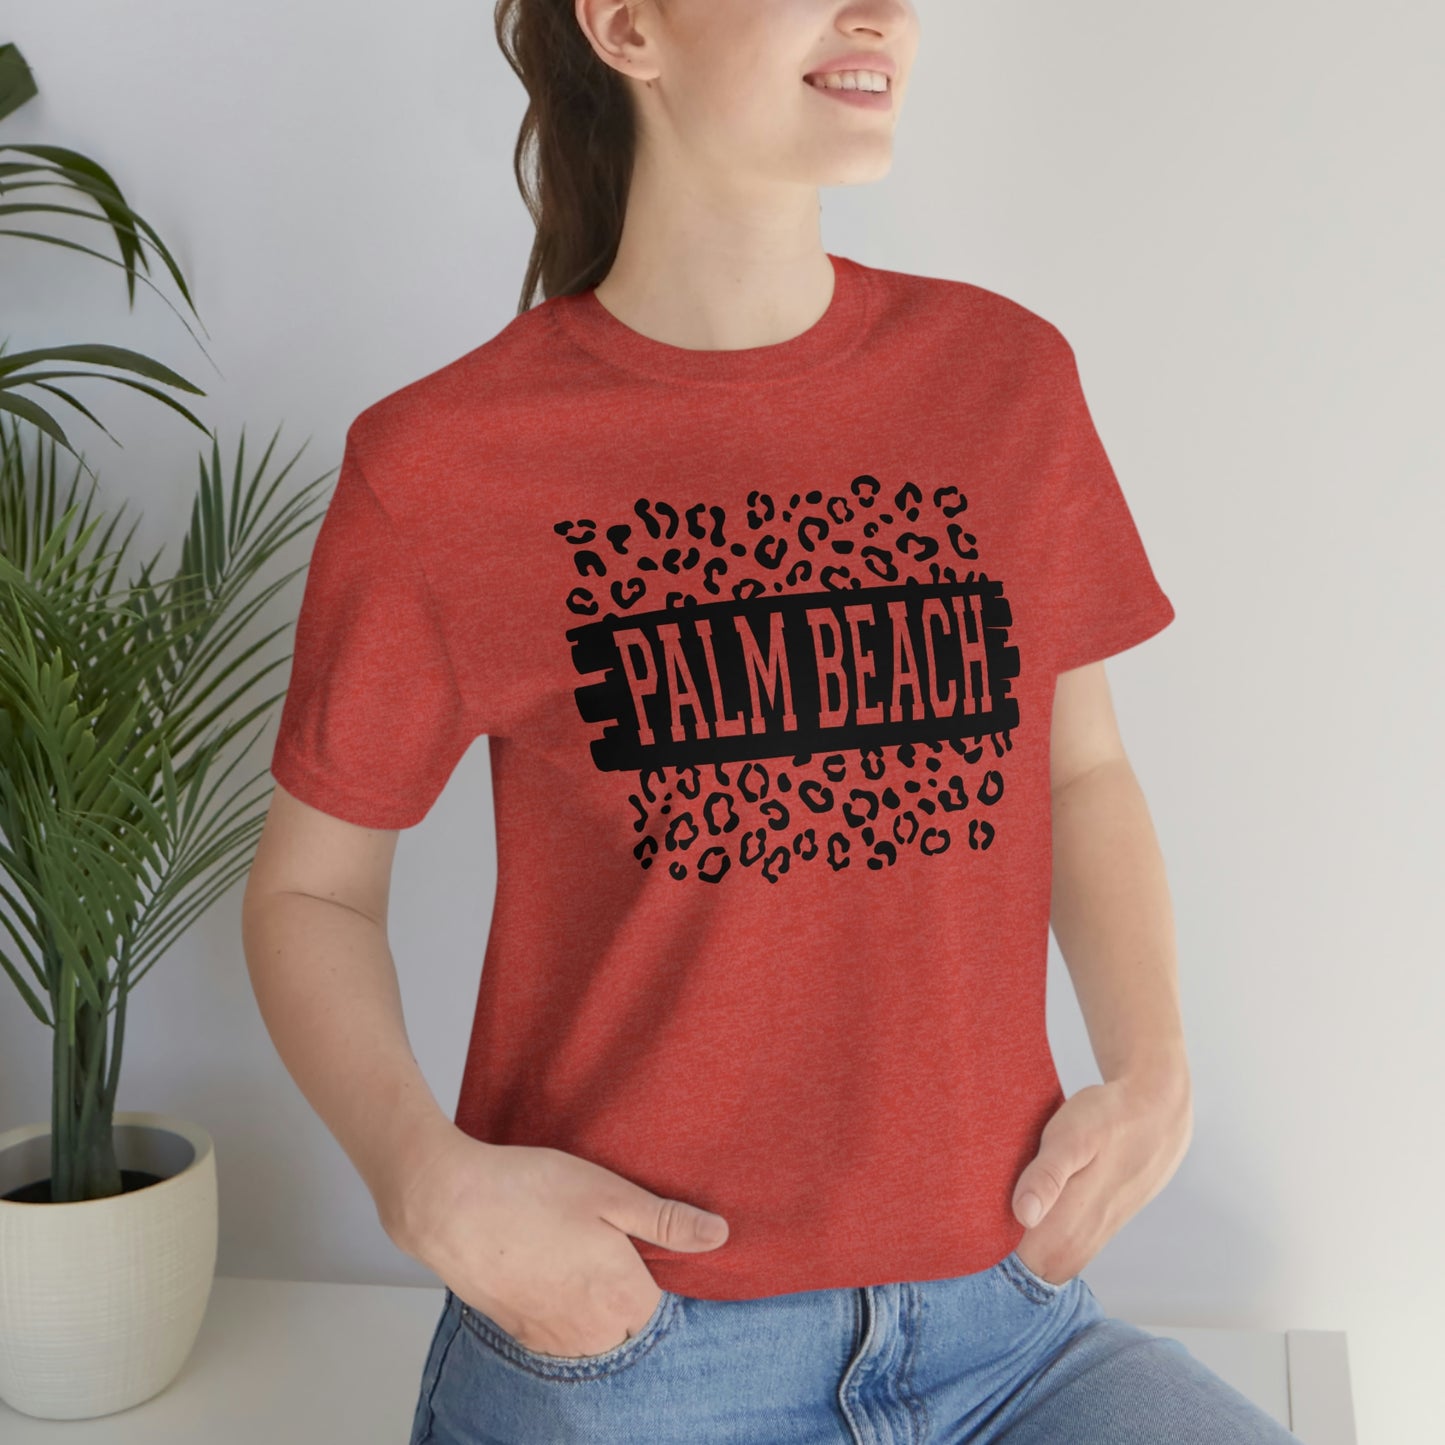 Palm Beach Leopard Print Florida Short Sleeve T-shirt